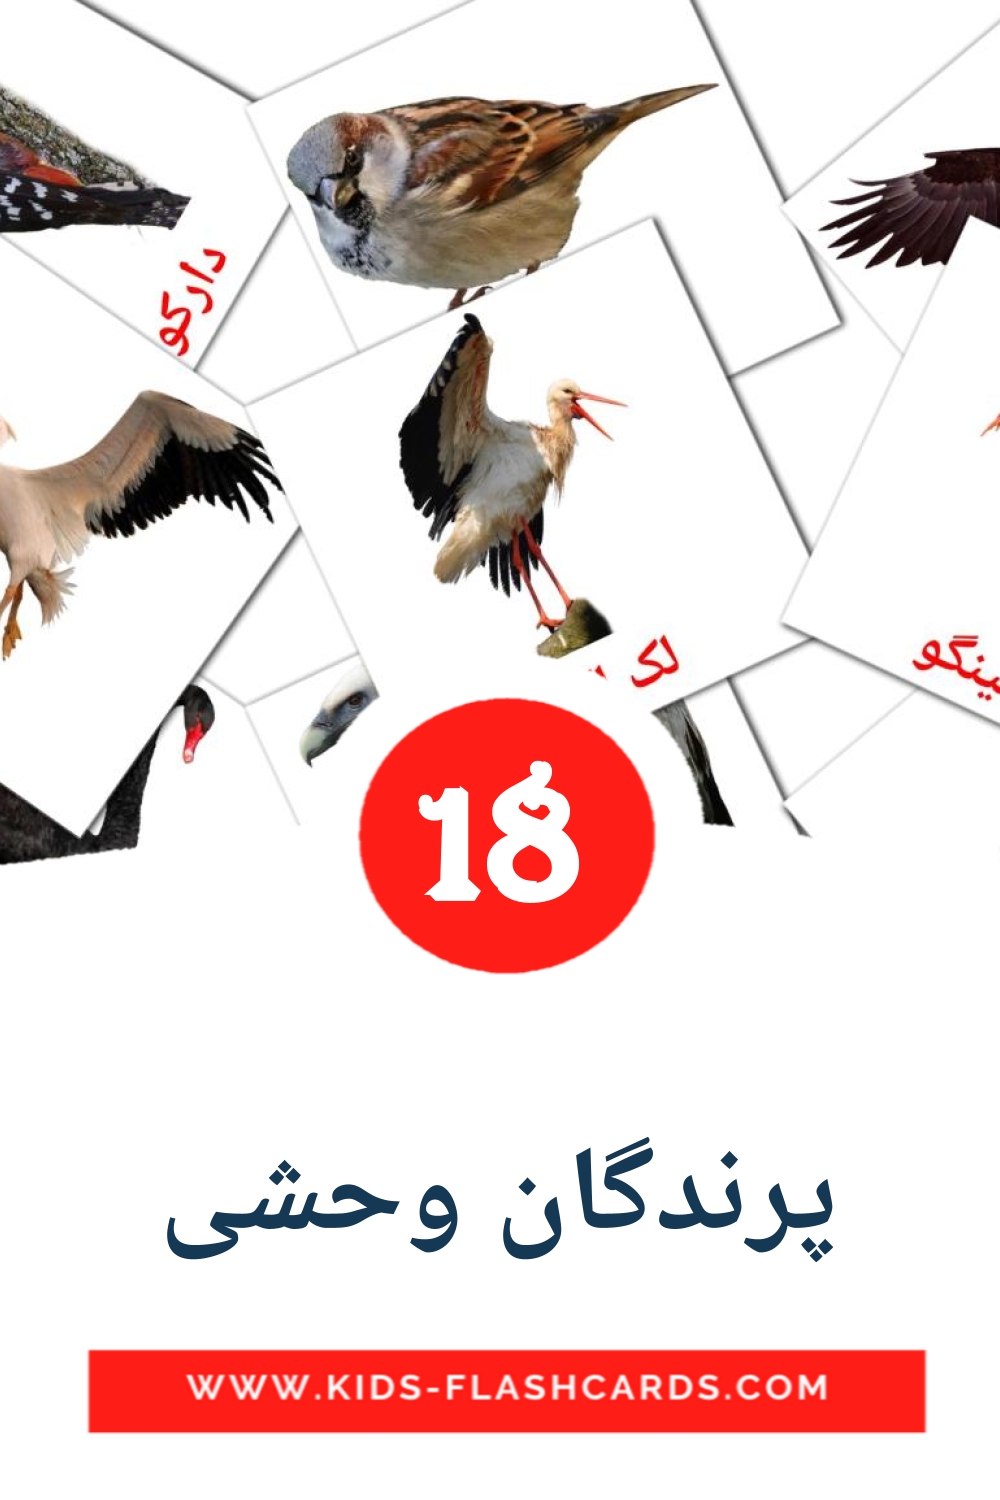 18 carte illustrate di پرندگان وحشی per la scuola materna in persiano